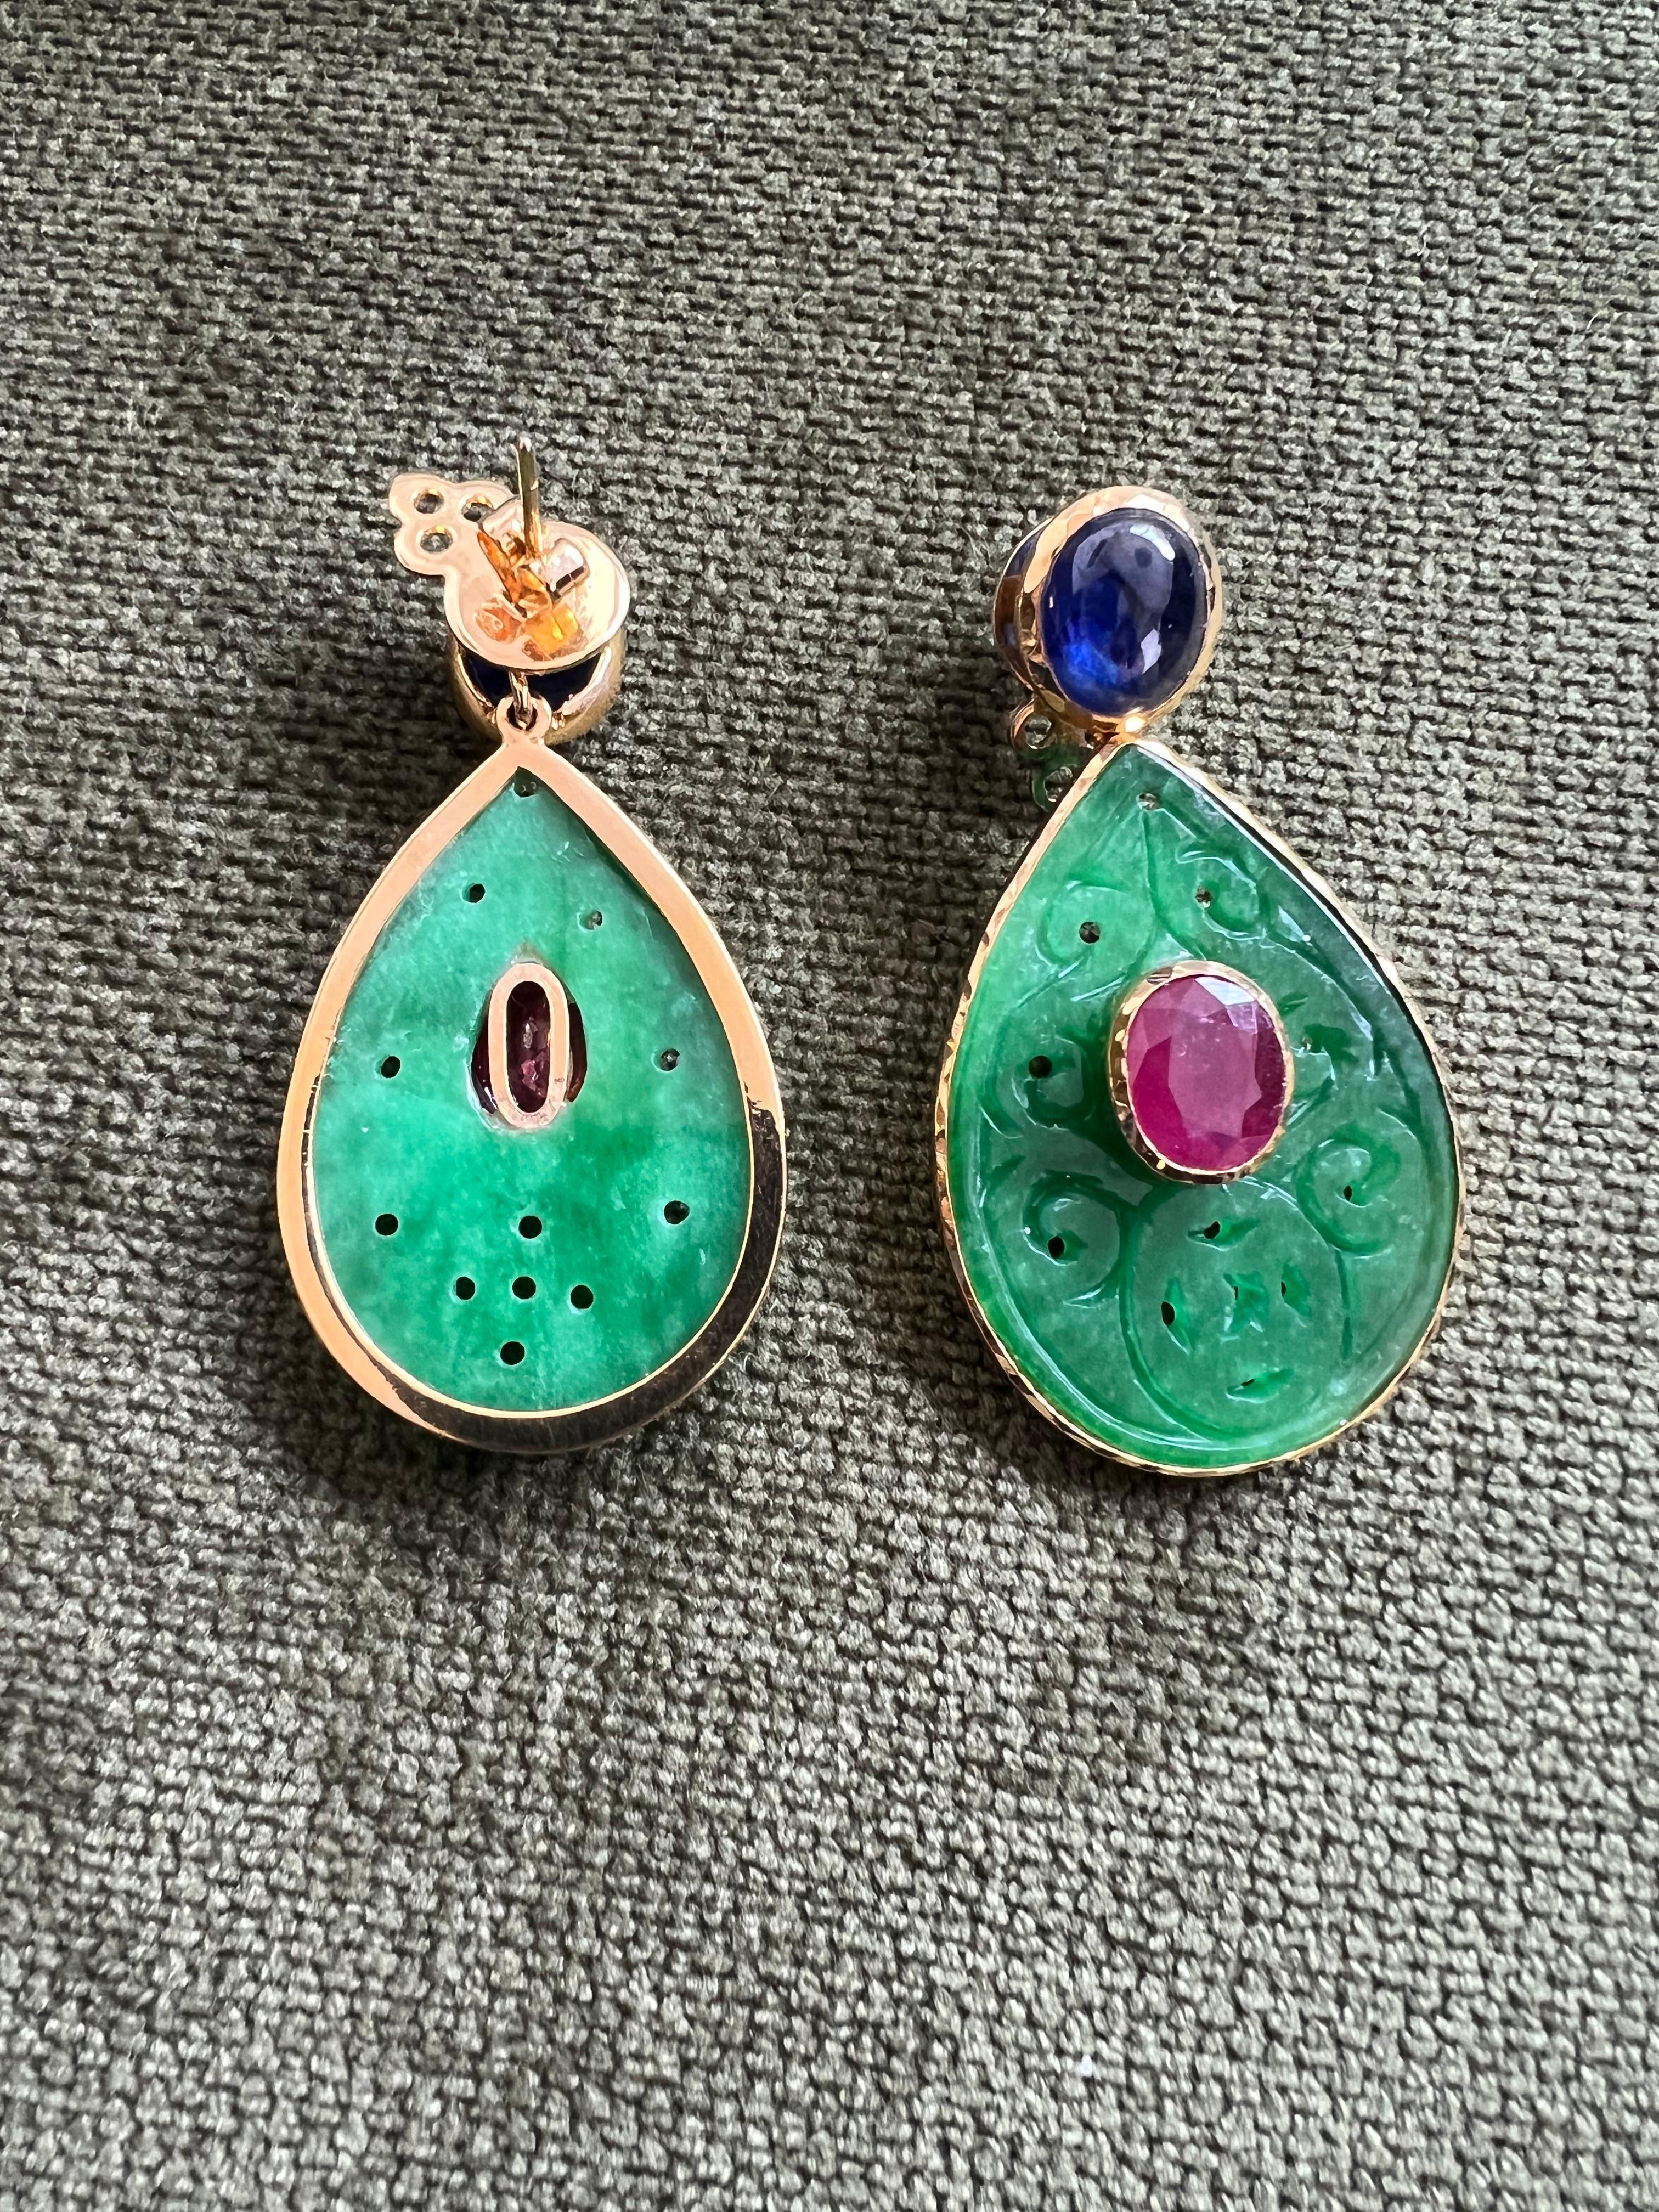 Bochic “Orient” Beautiful Green Jade, Blue Sapphire & Red Ruby Earrings 7